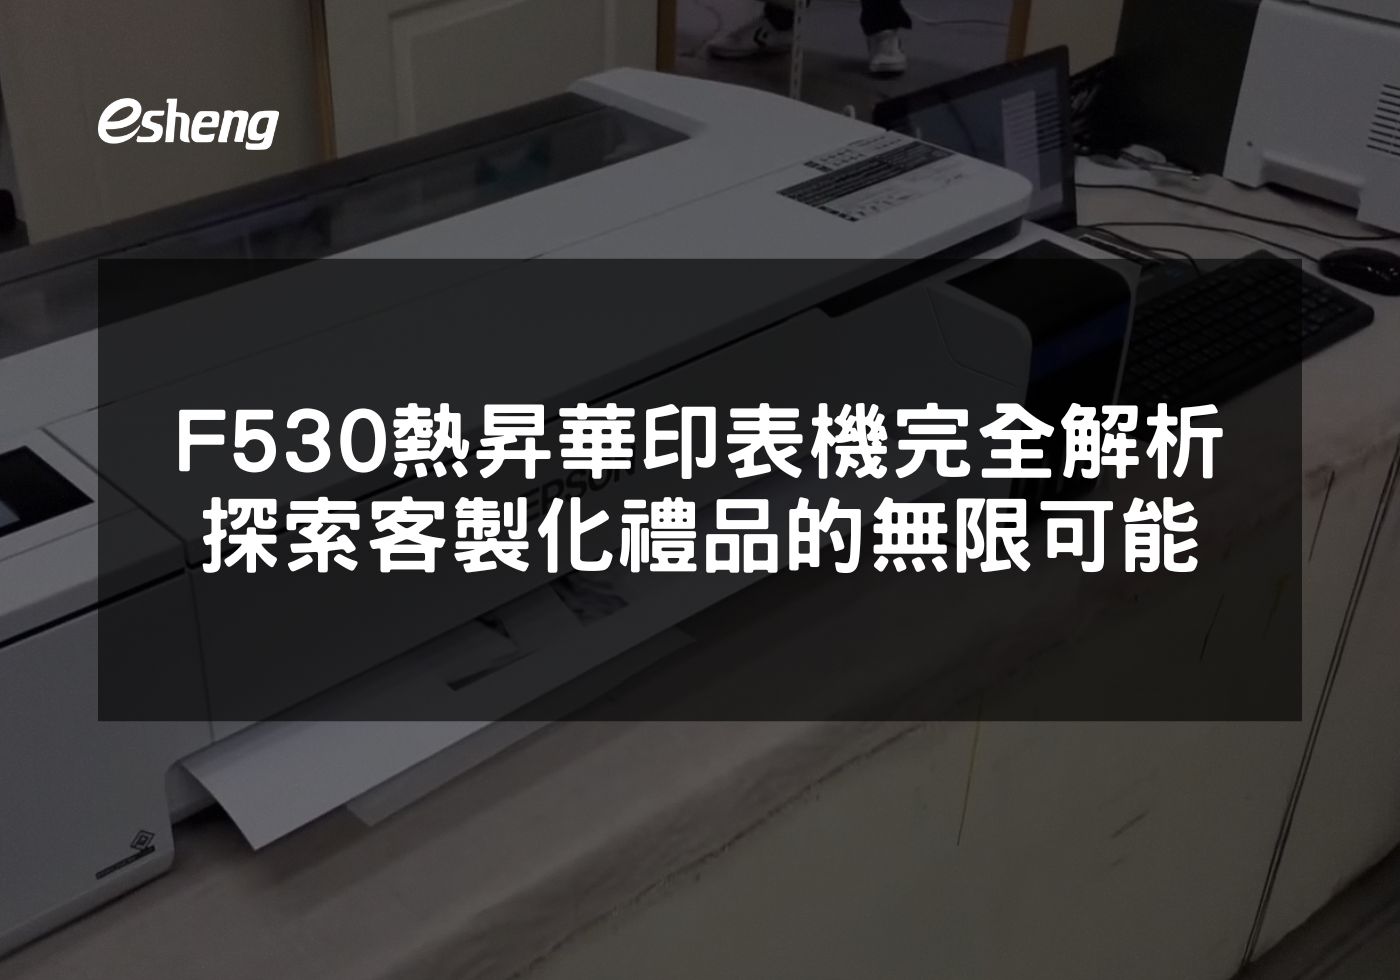 閱讀更多文章 F530熱昇華印表機完全解析 探索客製化禮品的無限可能